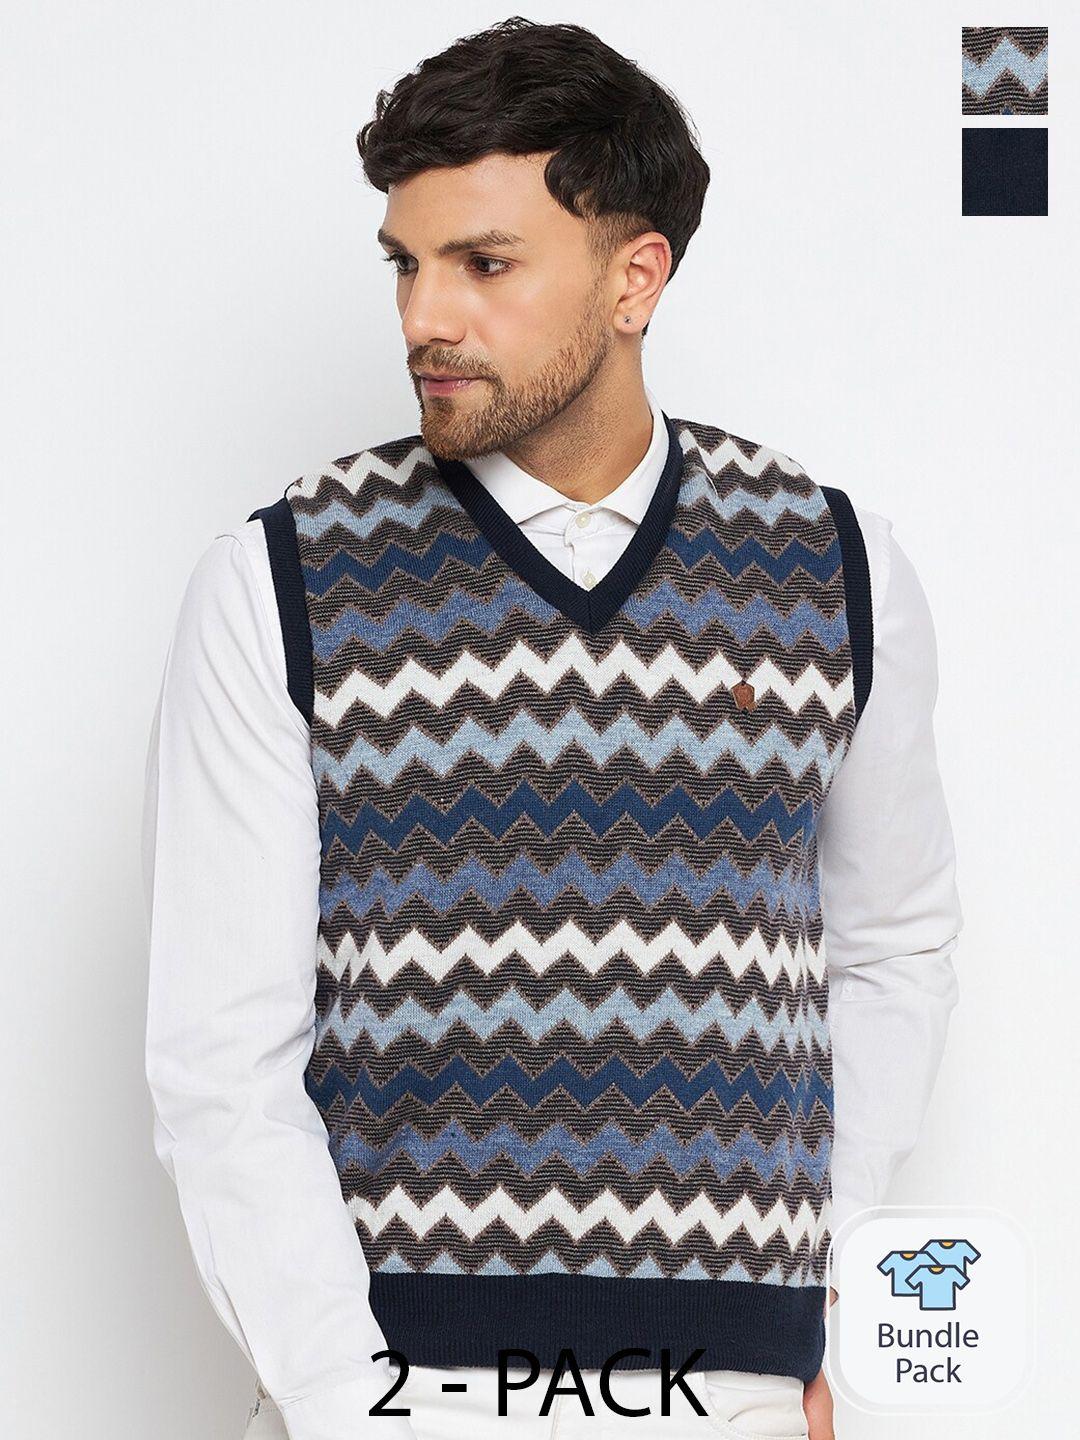 duke pack of 2 v-neck sleeveless acrylic sweater vest